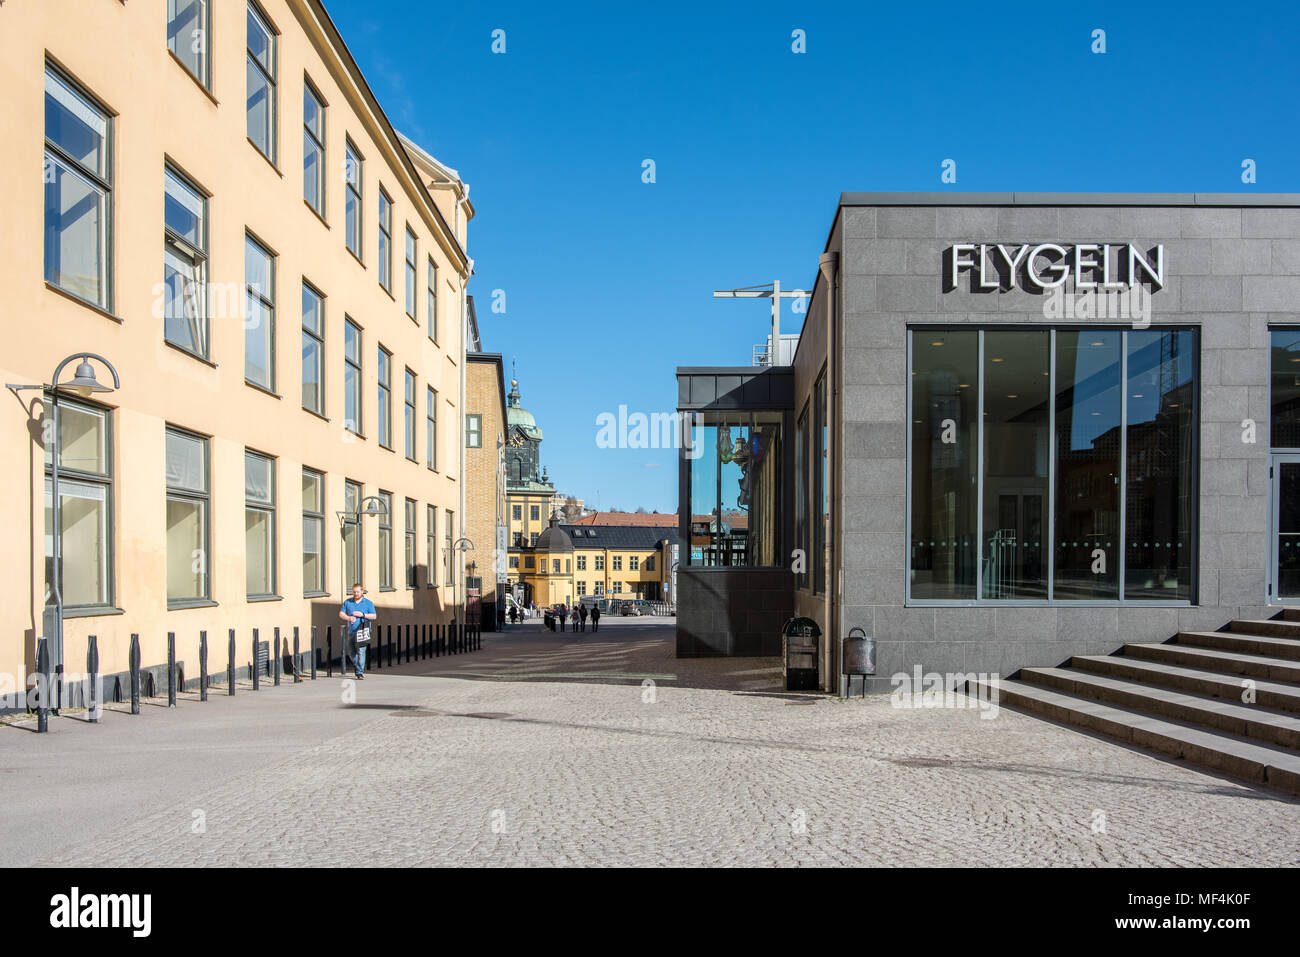 Concerto Flygeln e Palazzo delle conferenze in indsutrial paesaggio di Norrkoping. Norrkoping è una storica città industriale in Svezia. Foto Stock